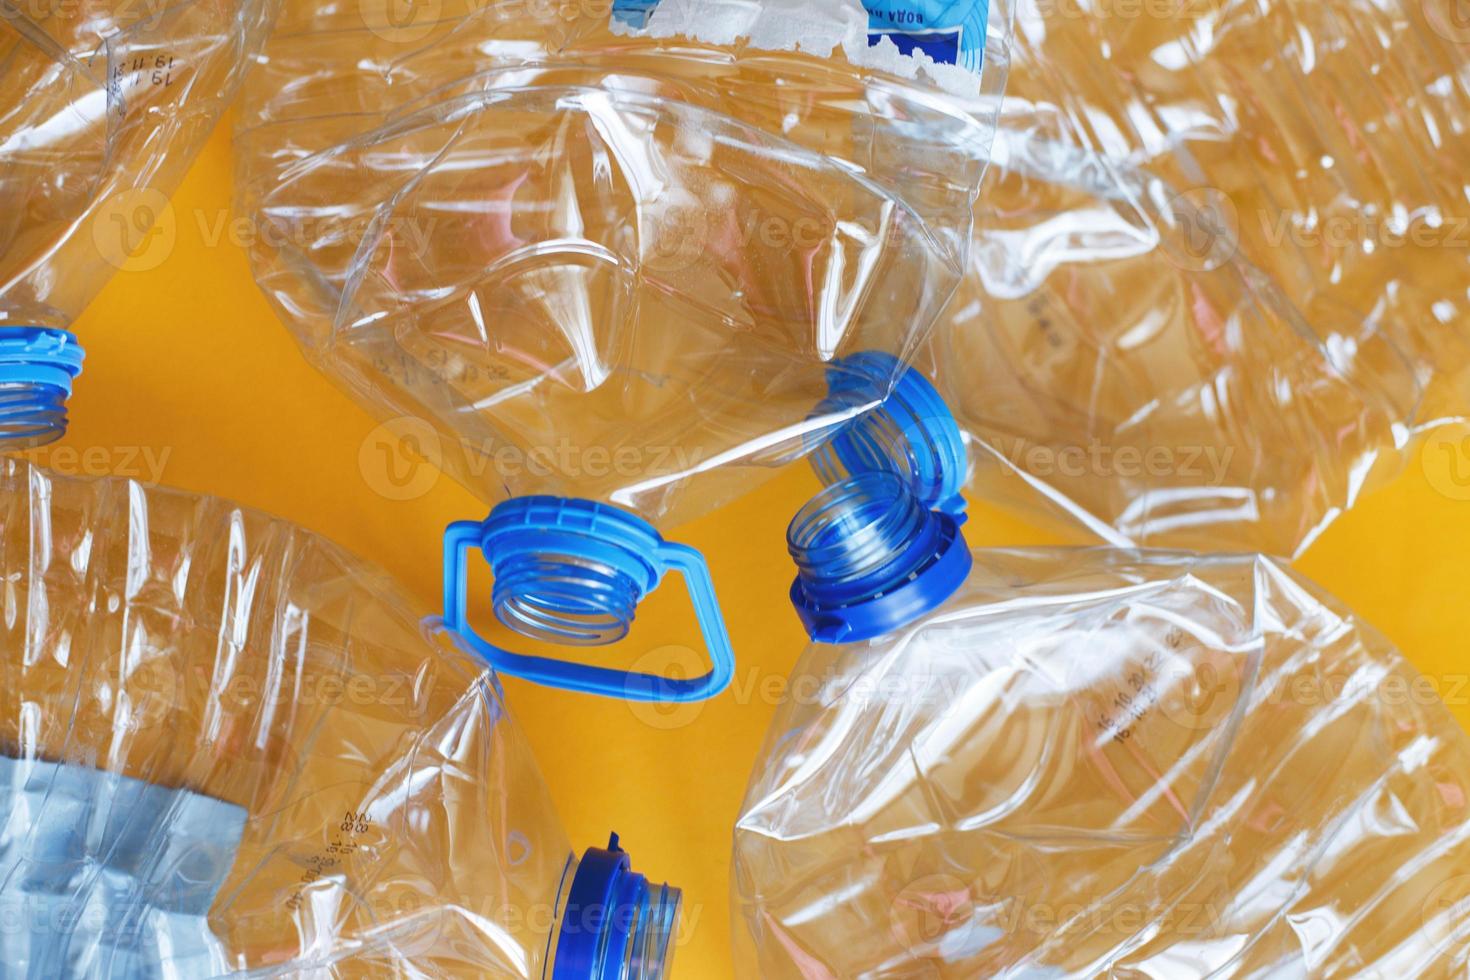 en massa av plast tömma skrynklig Begagnade flaskor på en gul bakgrund. avfall och förorening begrepp foto